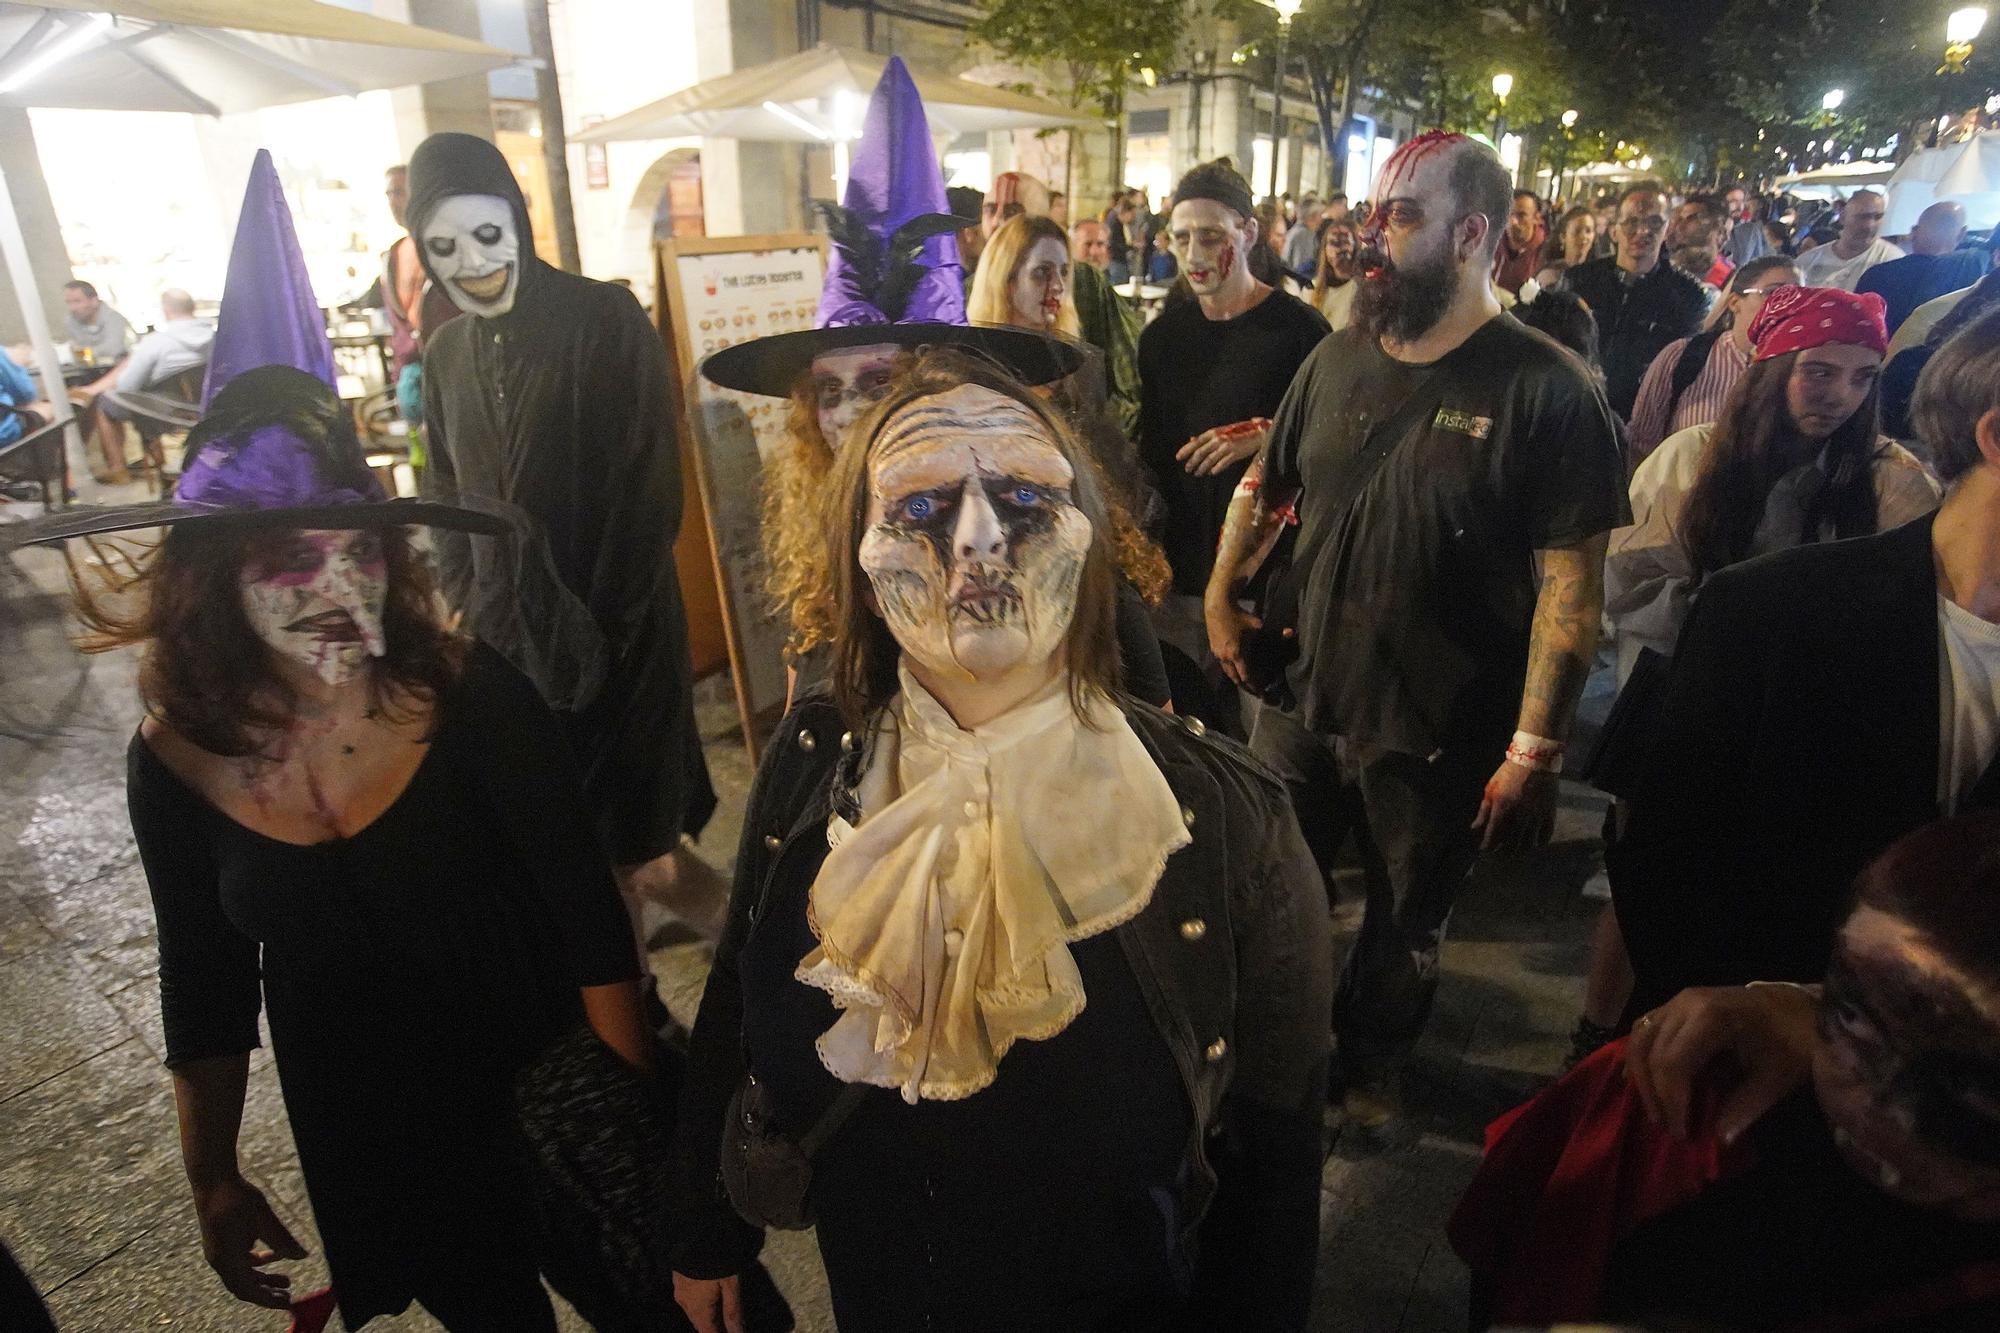 Els zombis envaeixen el Barri Vell en la nit més terrorífica de l’any